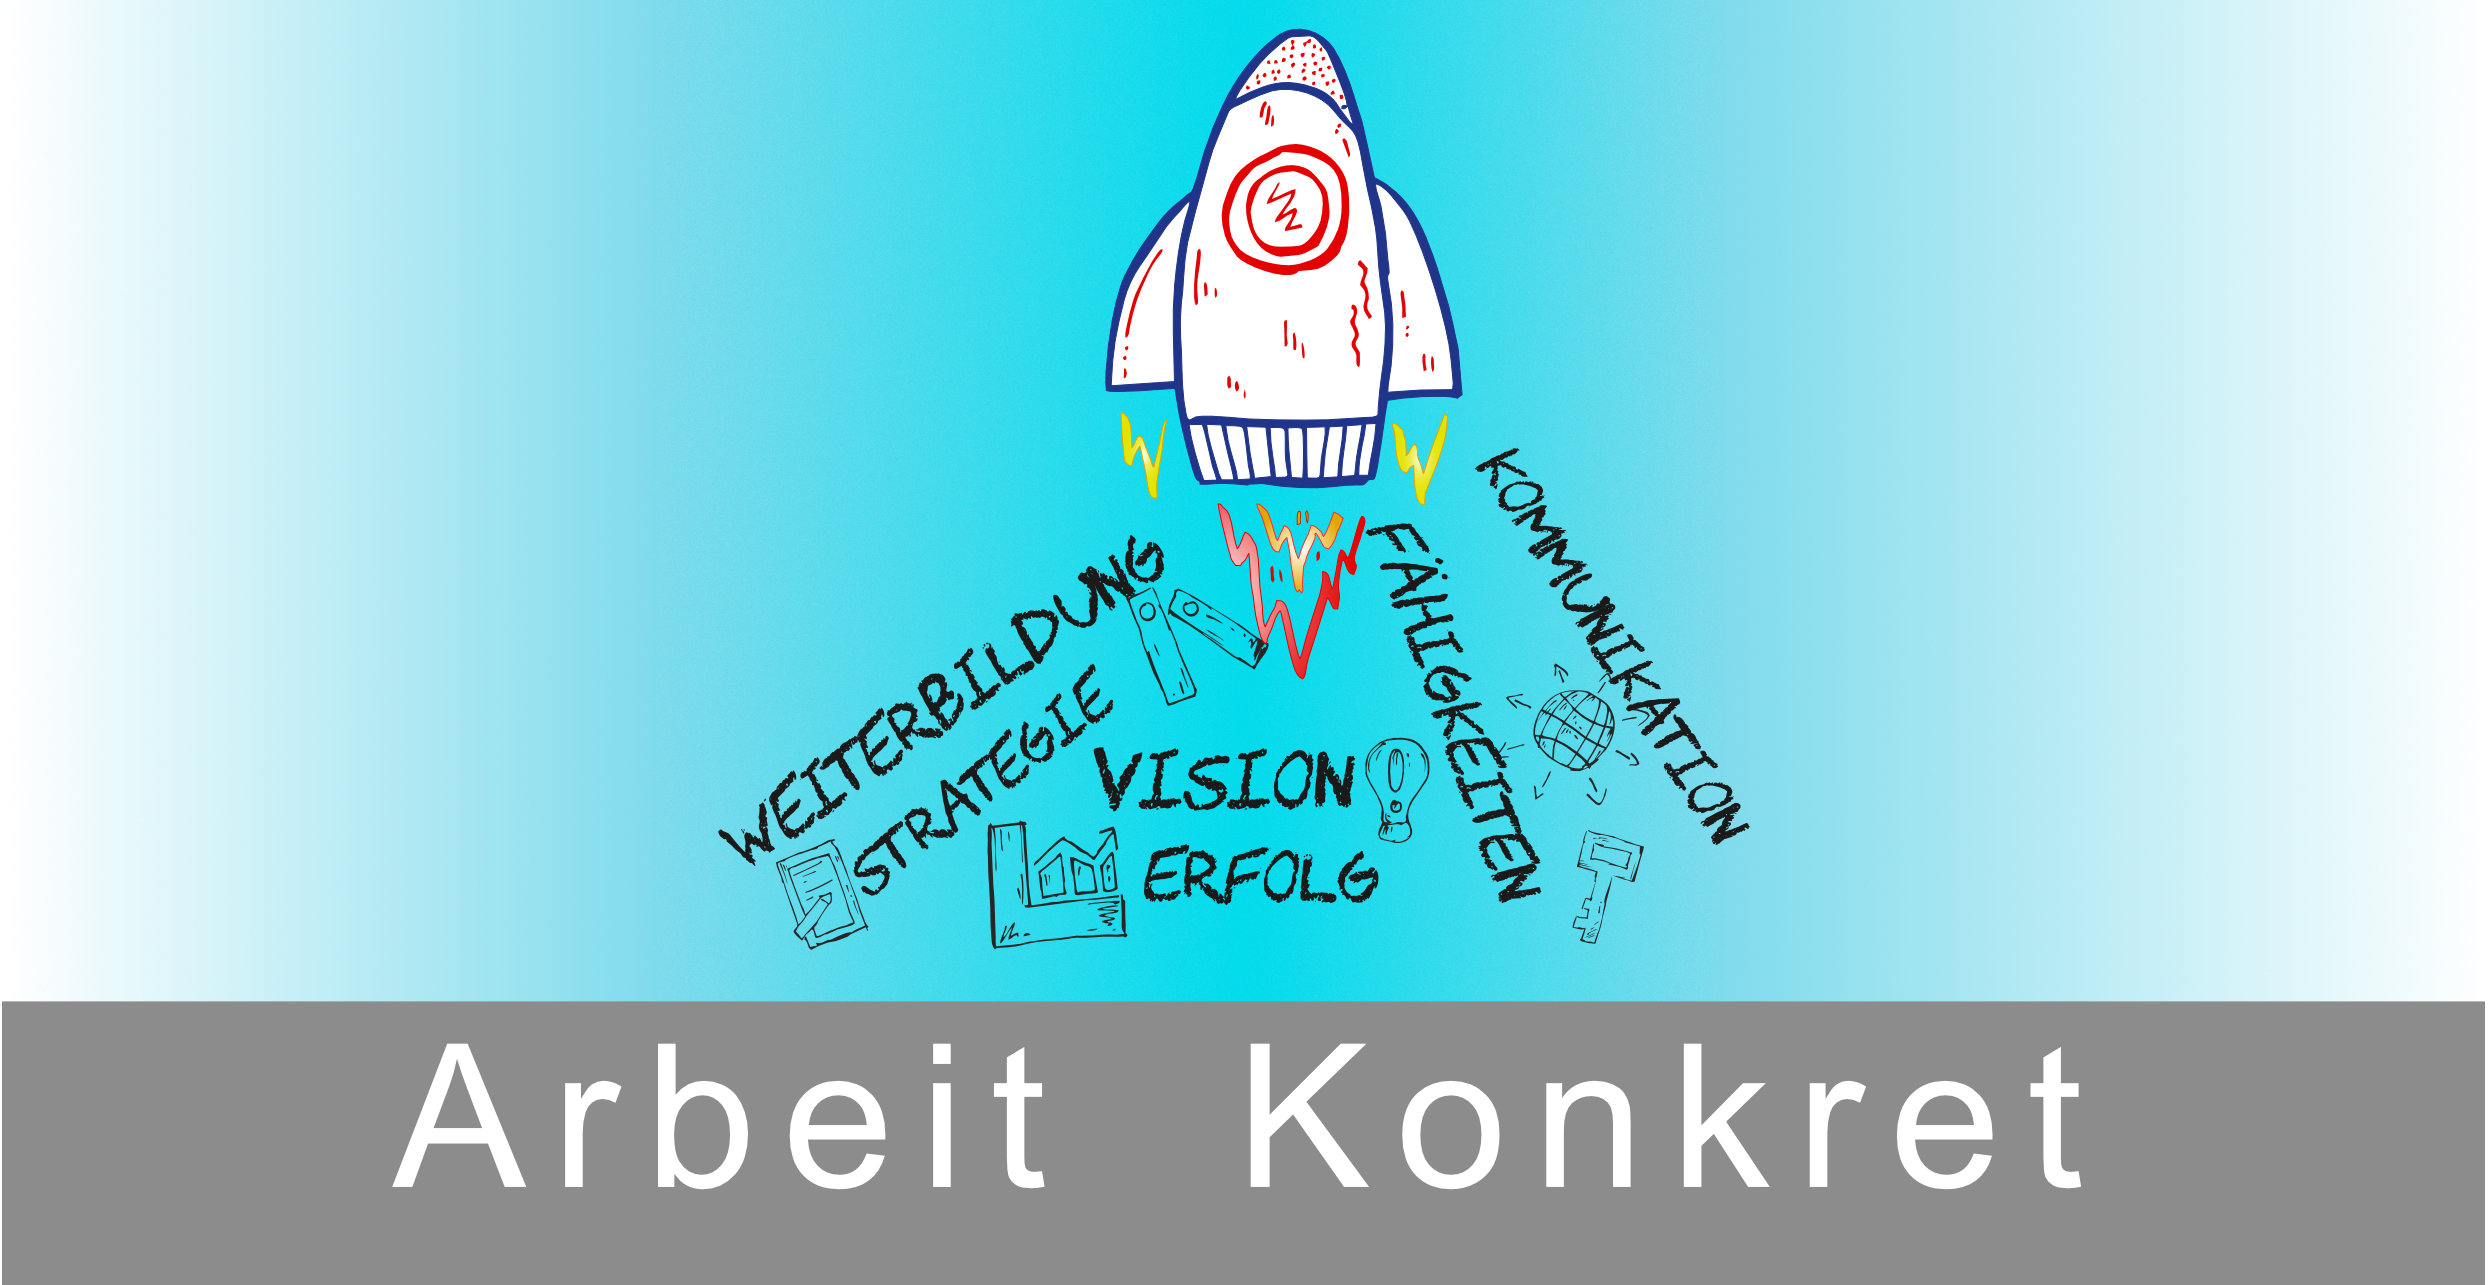 Zeichnung einer Rakete, die gerade startet. Ihr Antrieb: Weiterbildung, Strategie, Vision, Erfolg, Fähigkeiten, Kommunikation